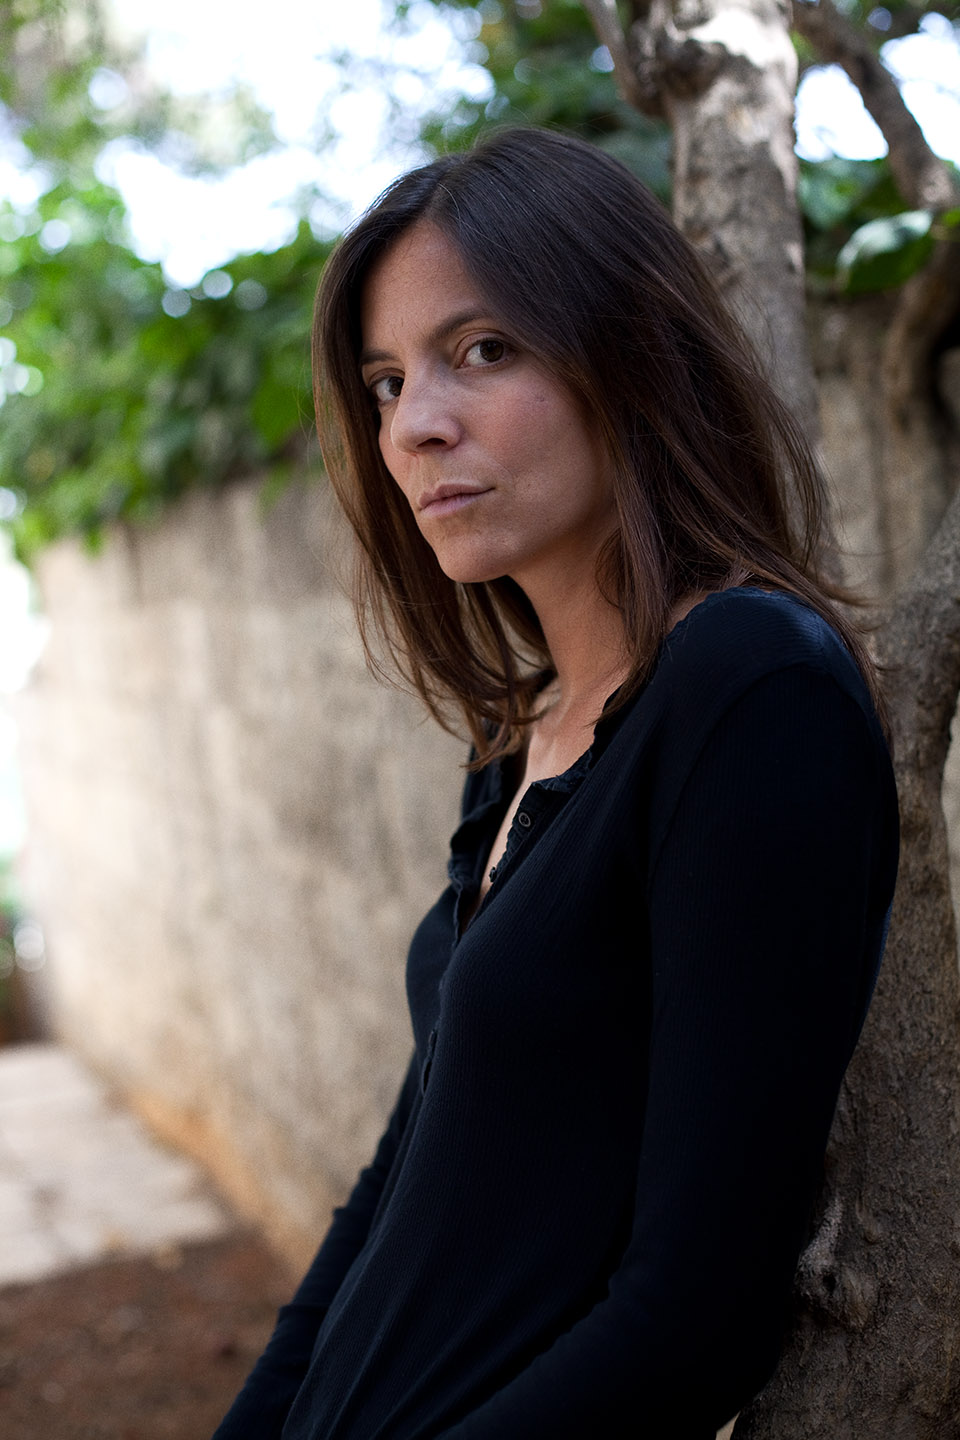 Justine Augier, author